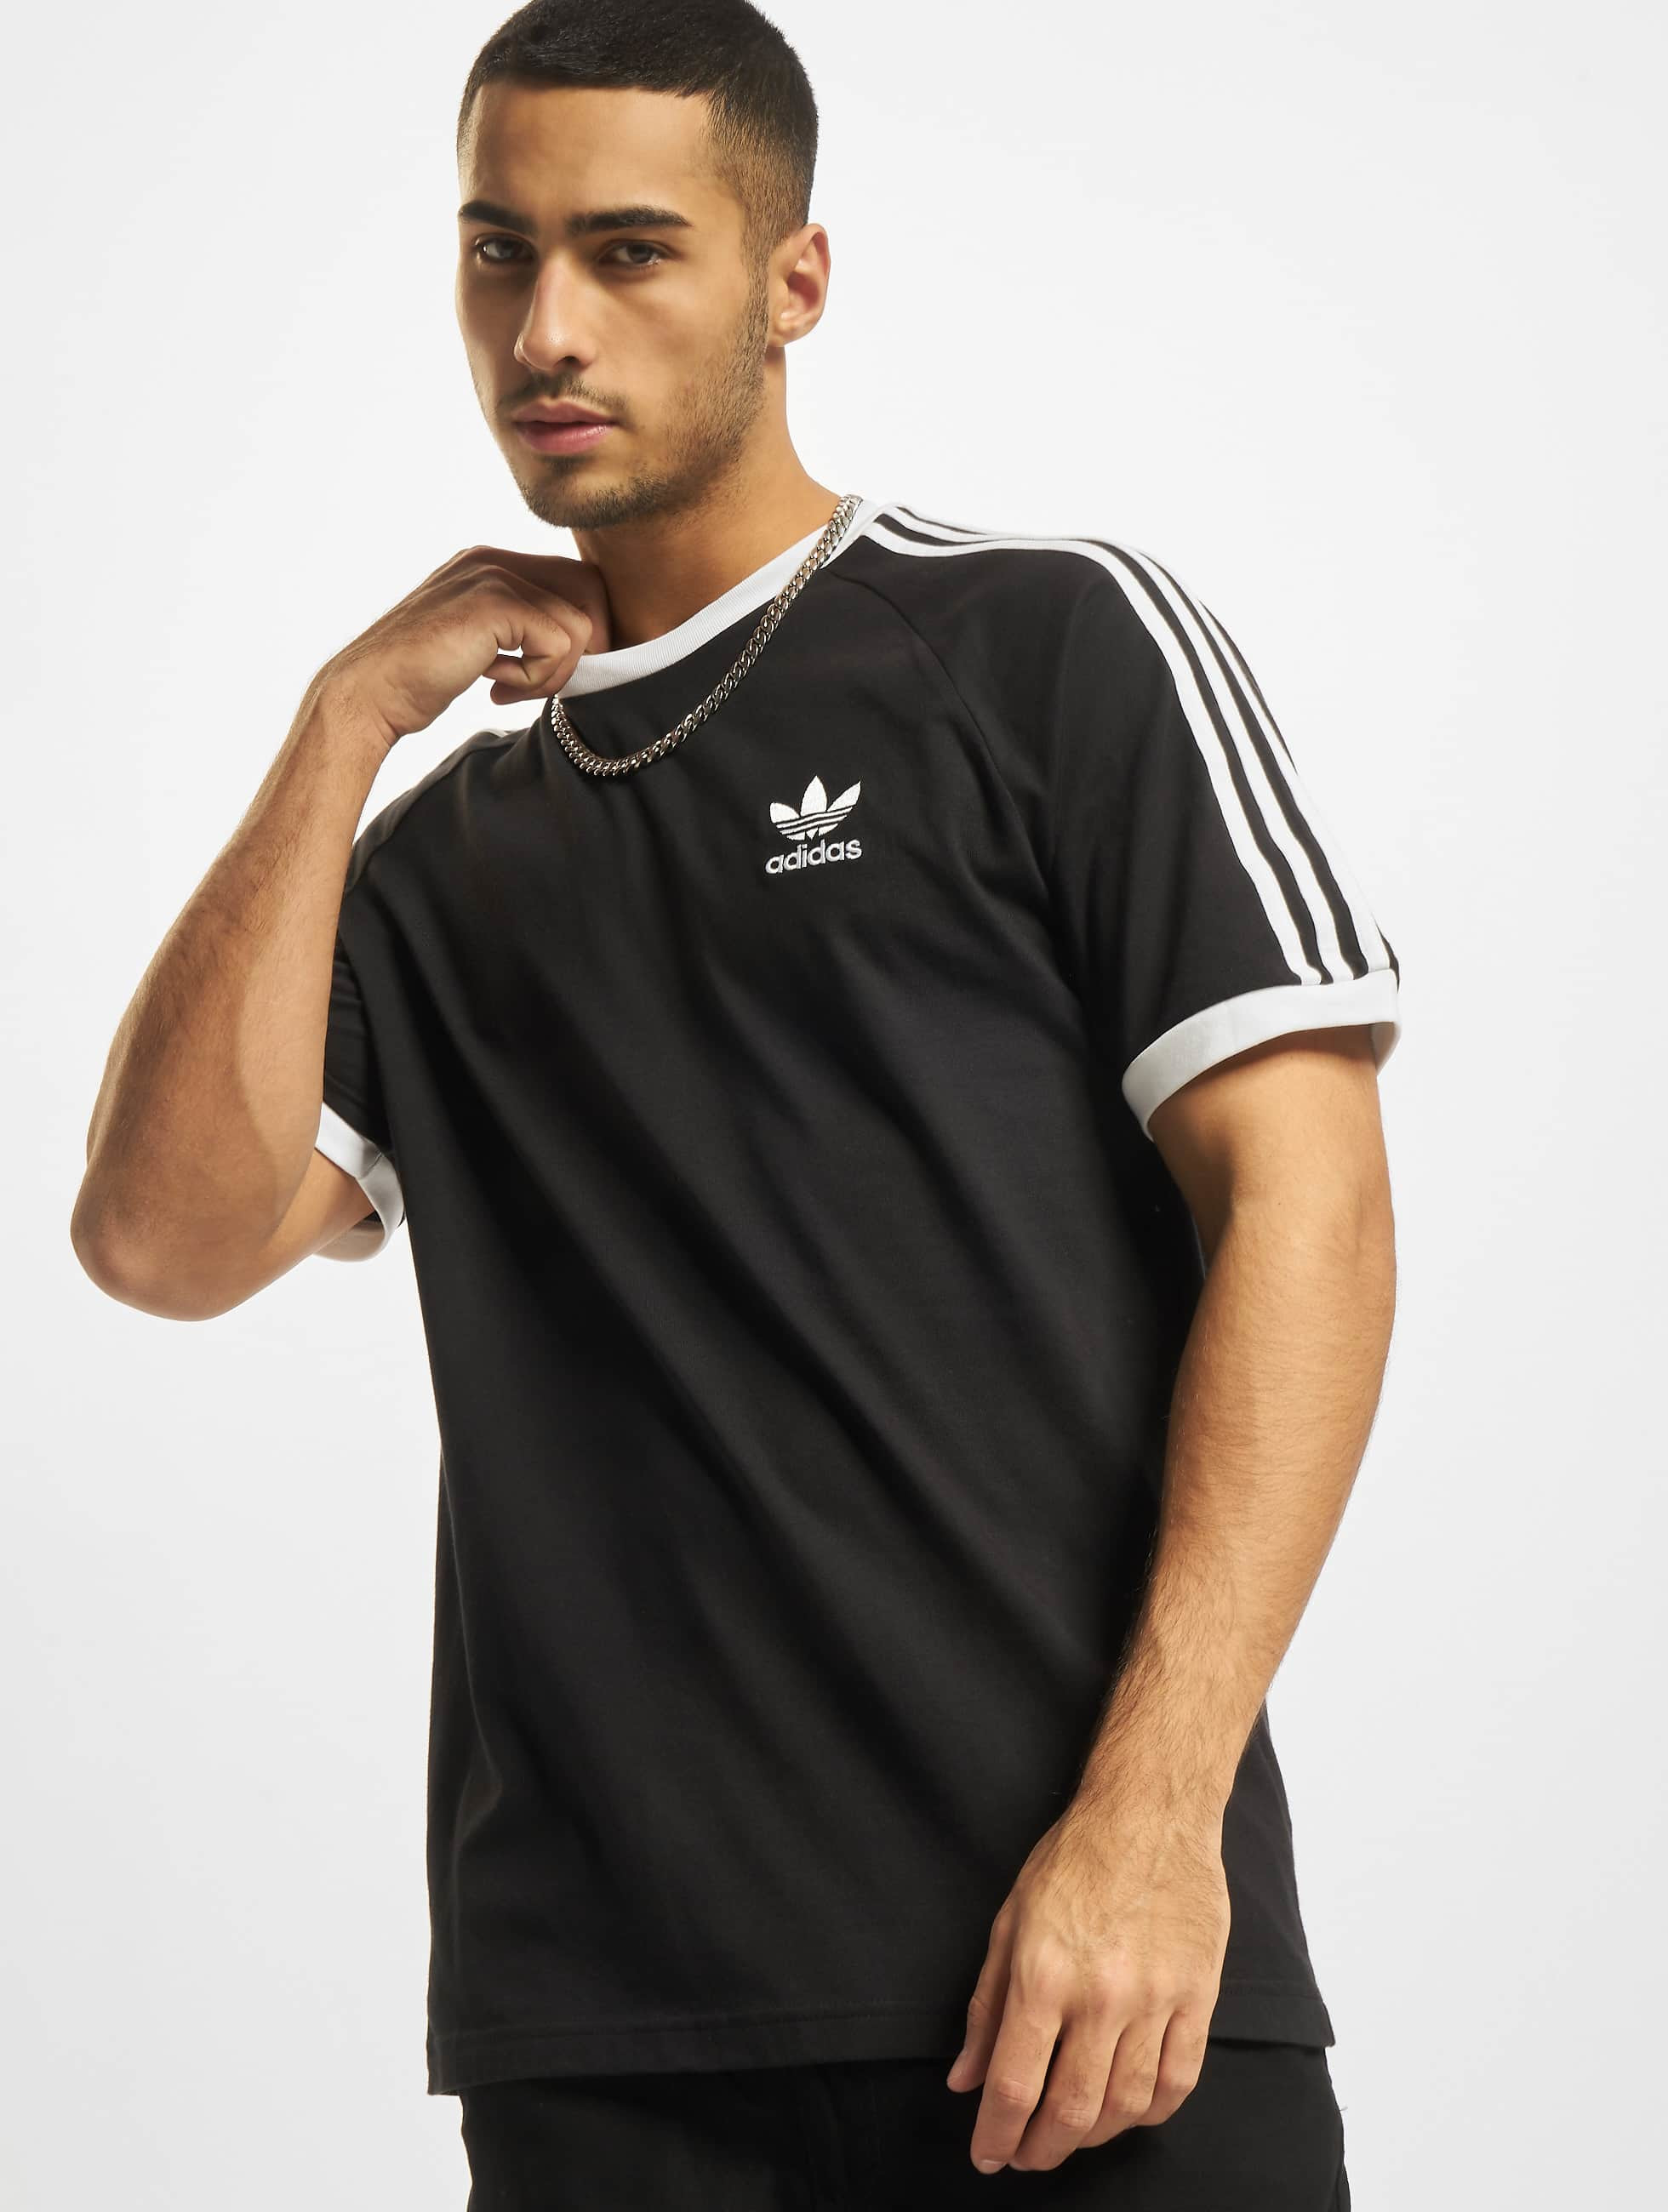 adidas bovenstuk / t-shirt 3-Stripes in zwart 801796